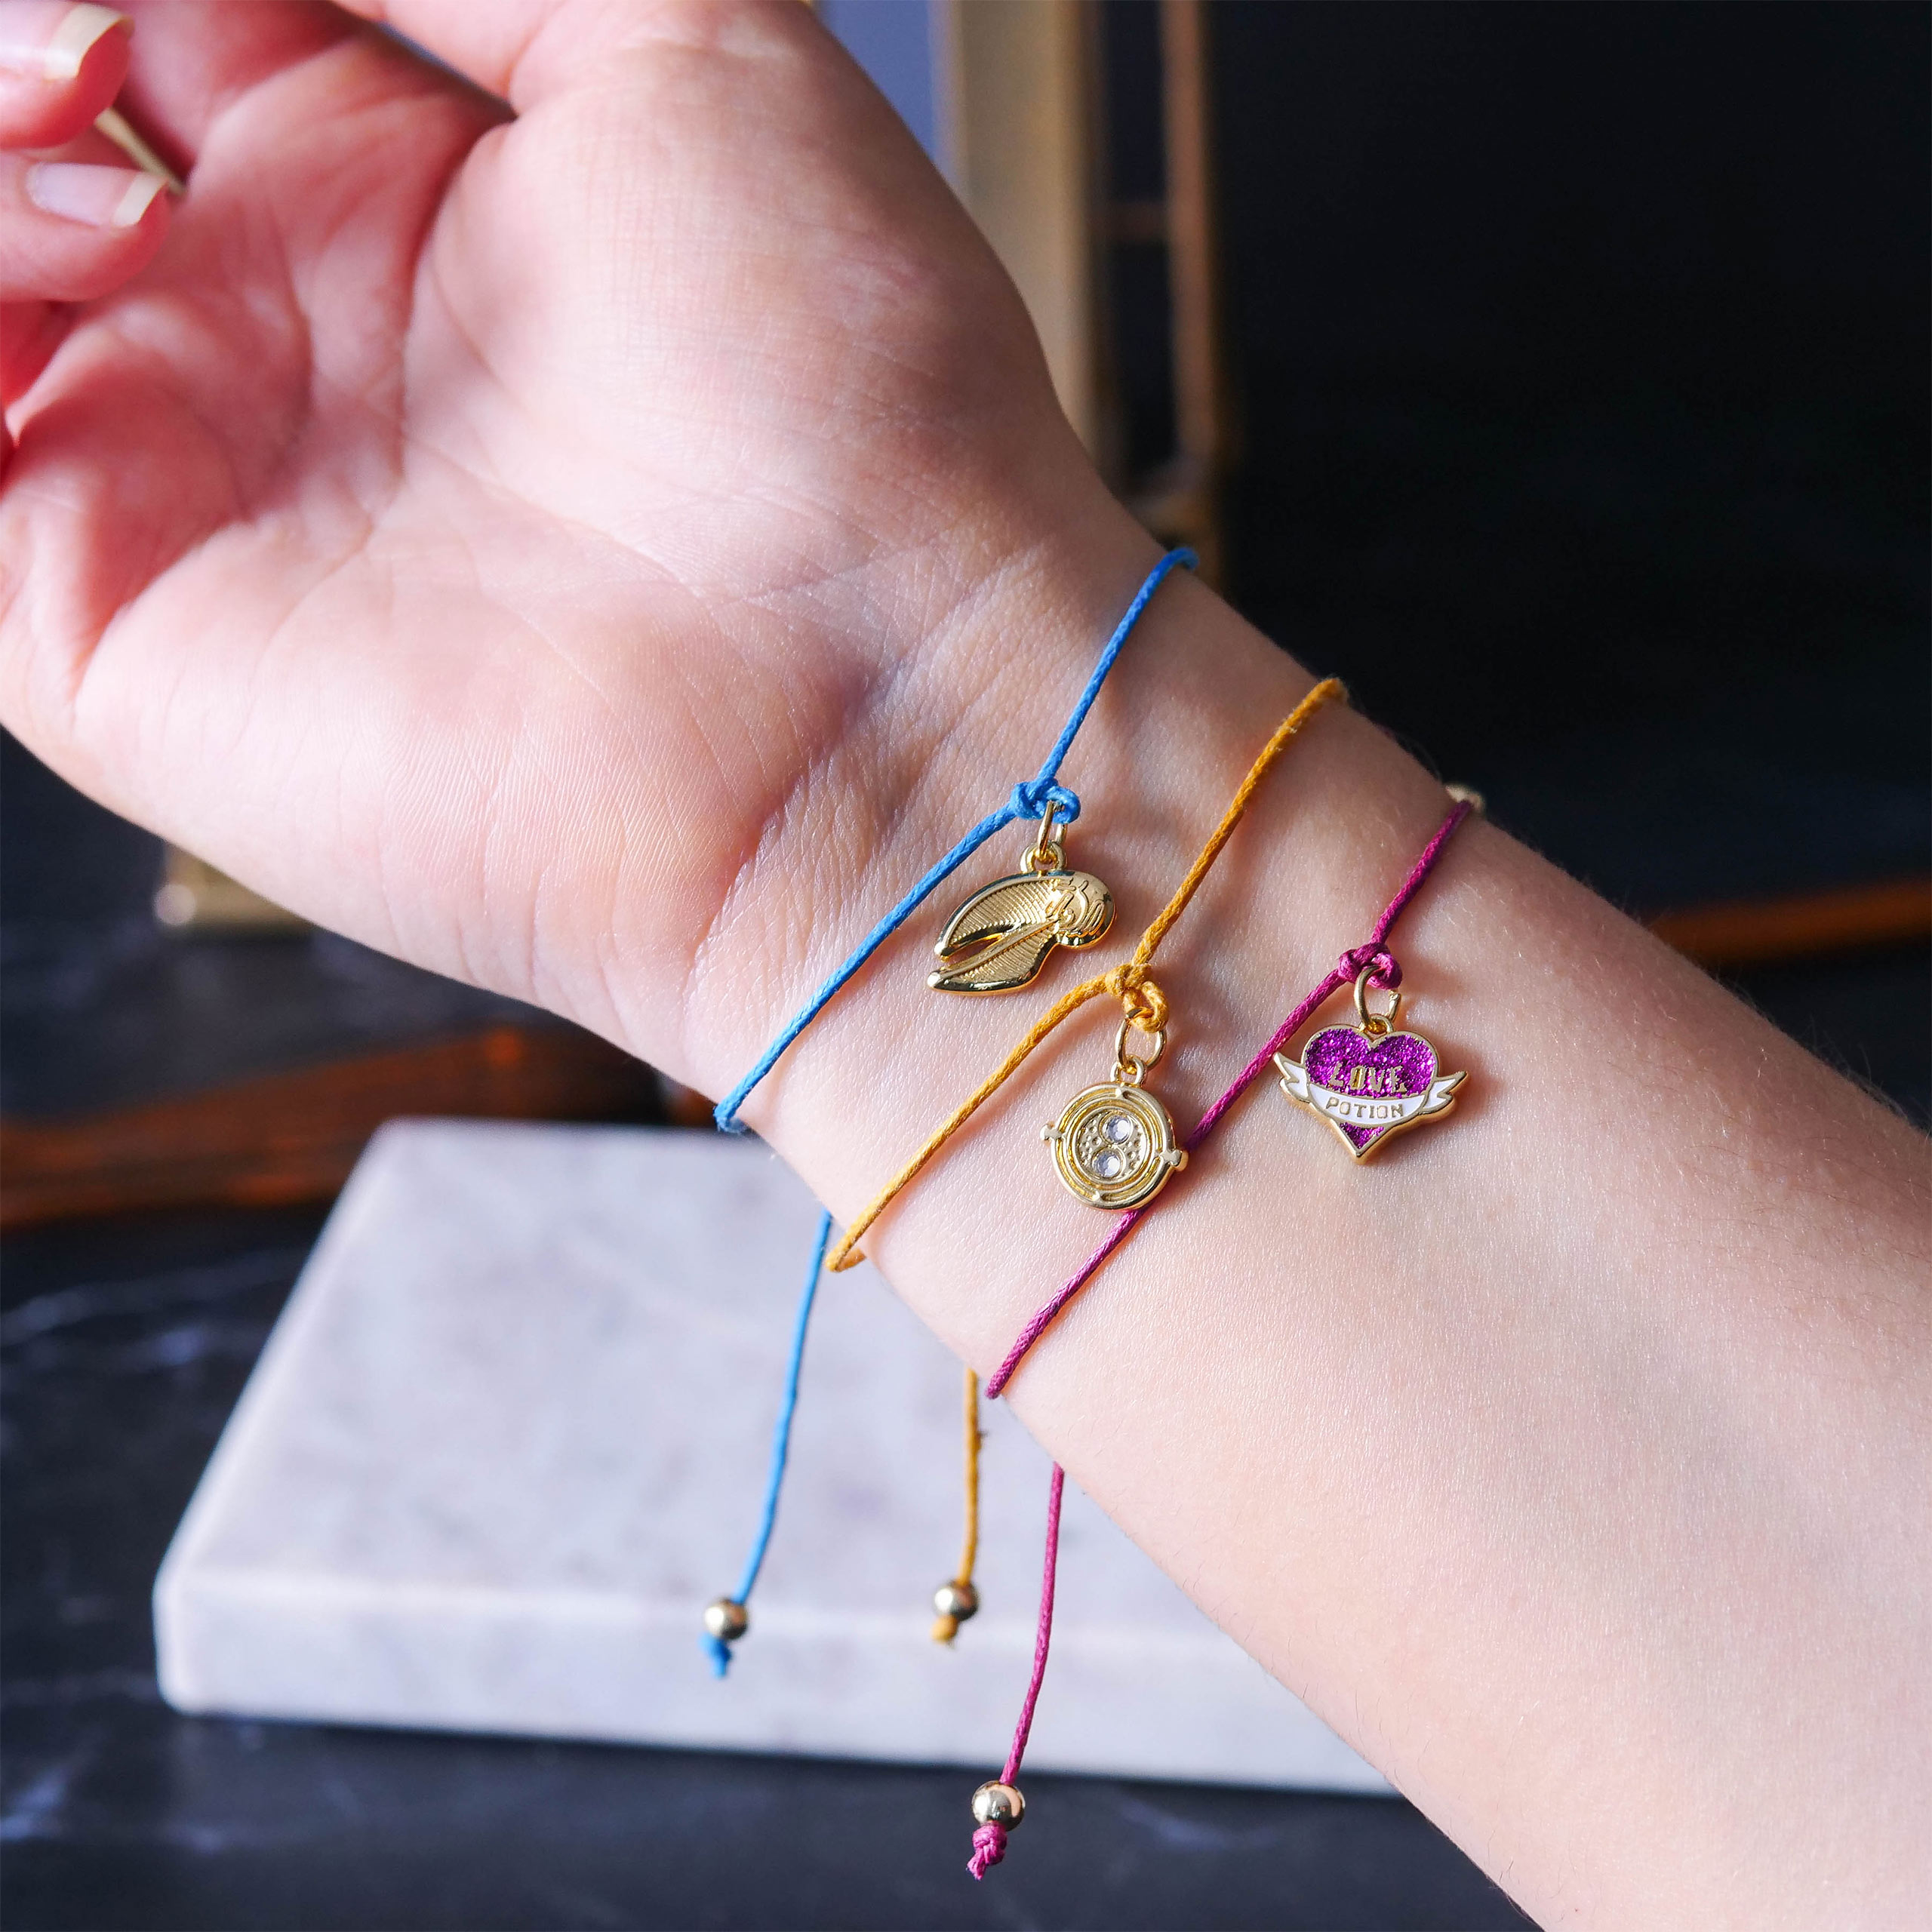 Harry Potter - Bracelets 3-piece set with pendant